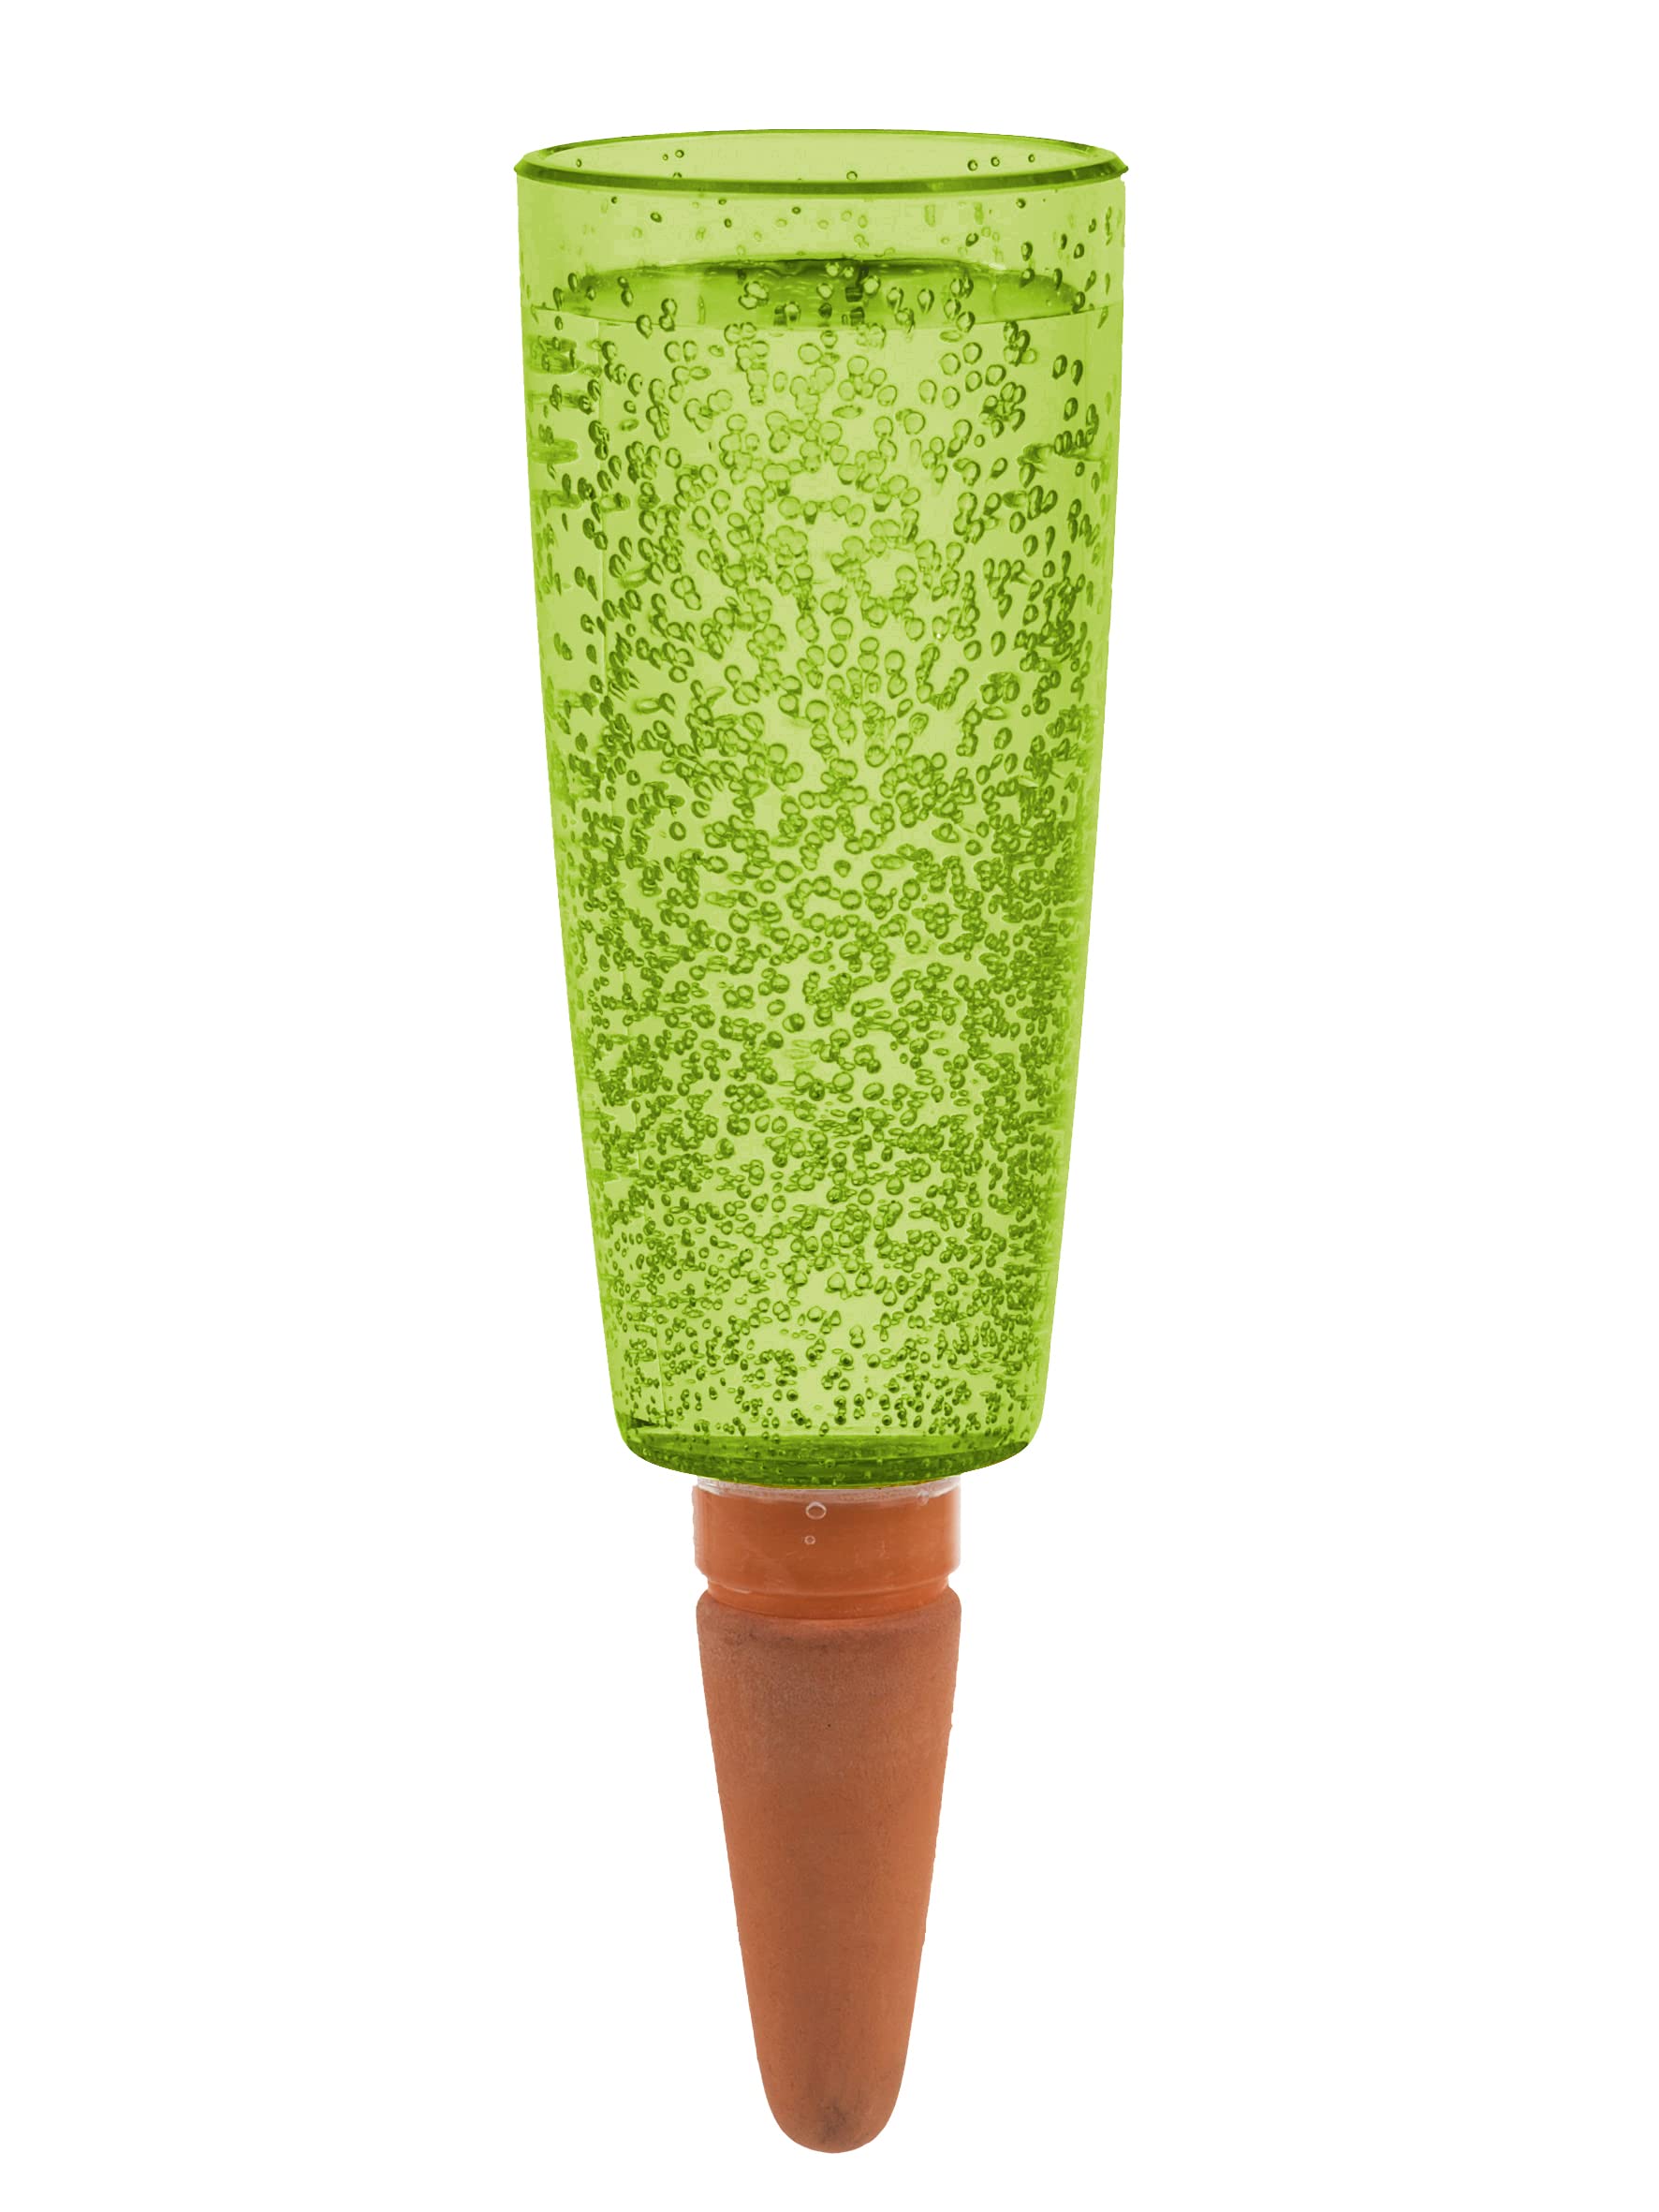 Scheurich Wasserspender Copa XL | 5X Grün | 500 ml Füllmenge | Bewässerungskugel klein mit Ton Fuß | Wasserspender Pflanzen und Blumen Terrakotta Stiel